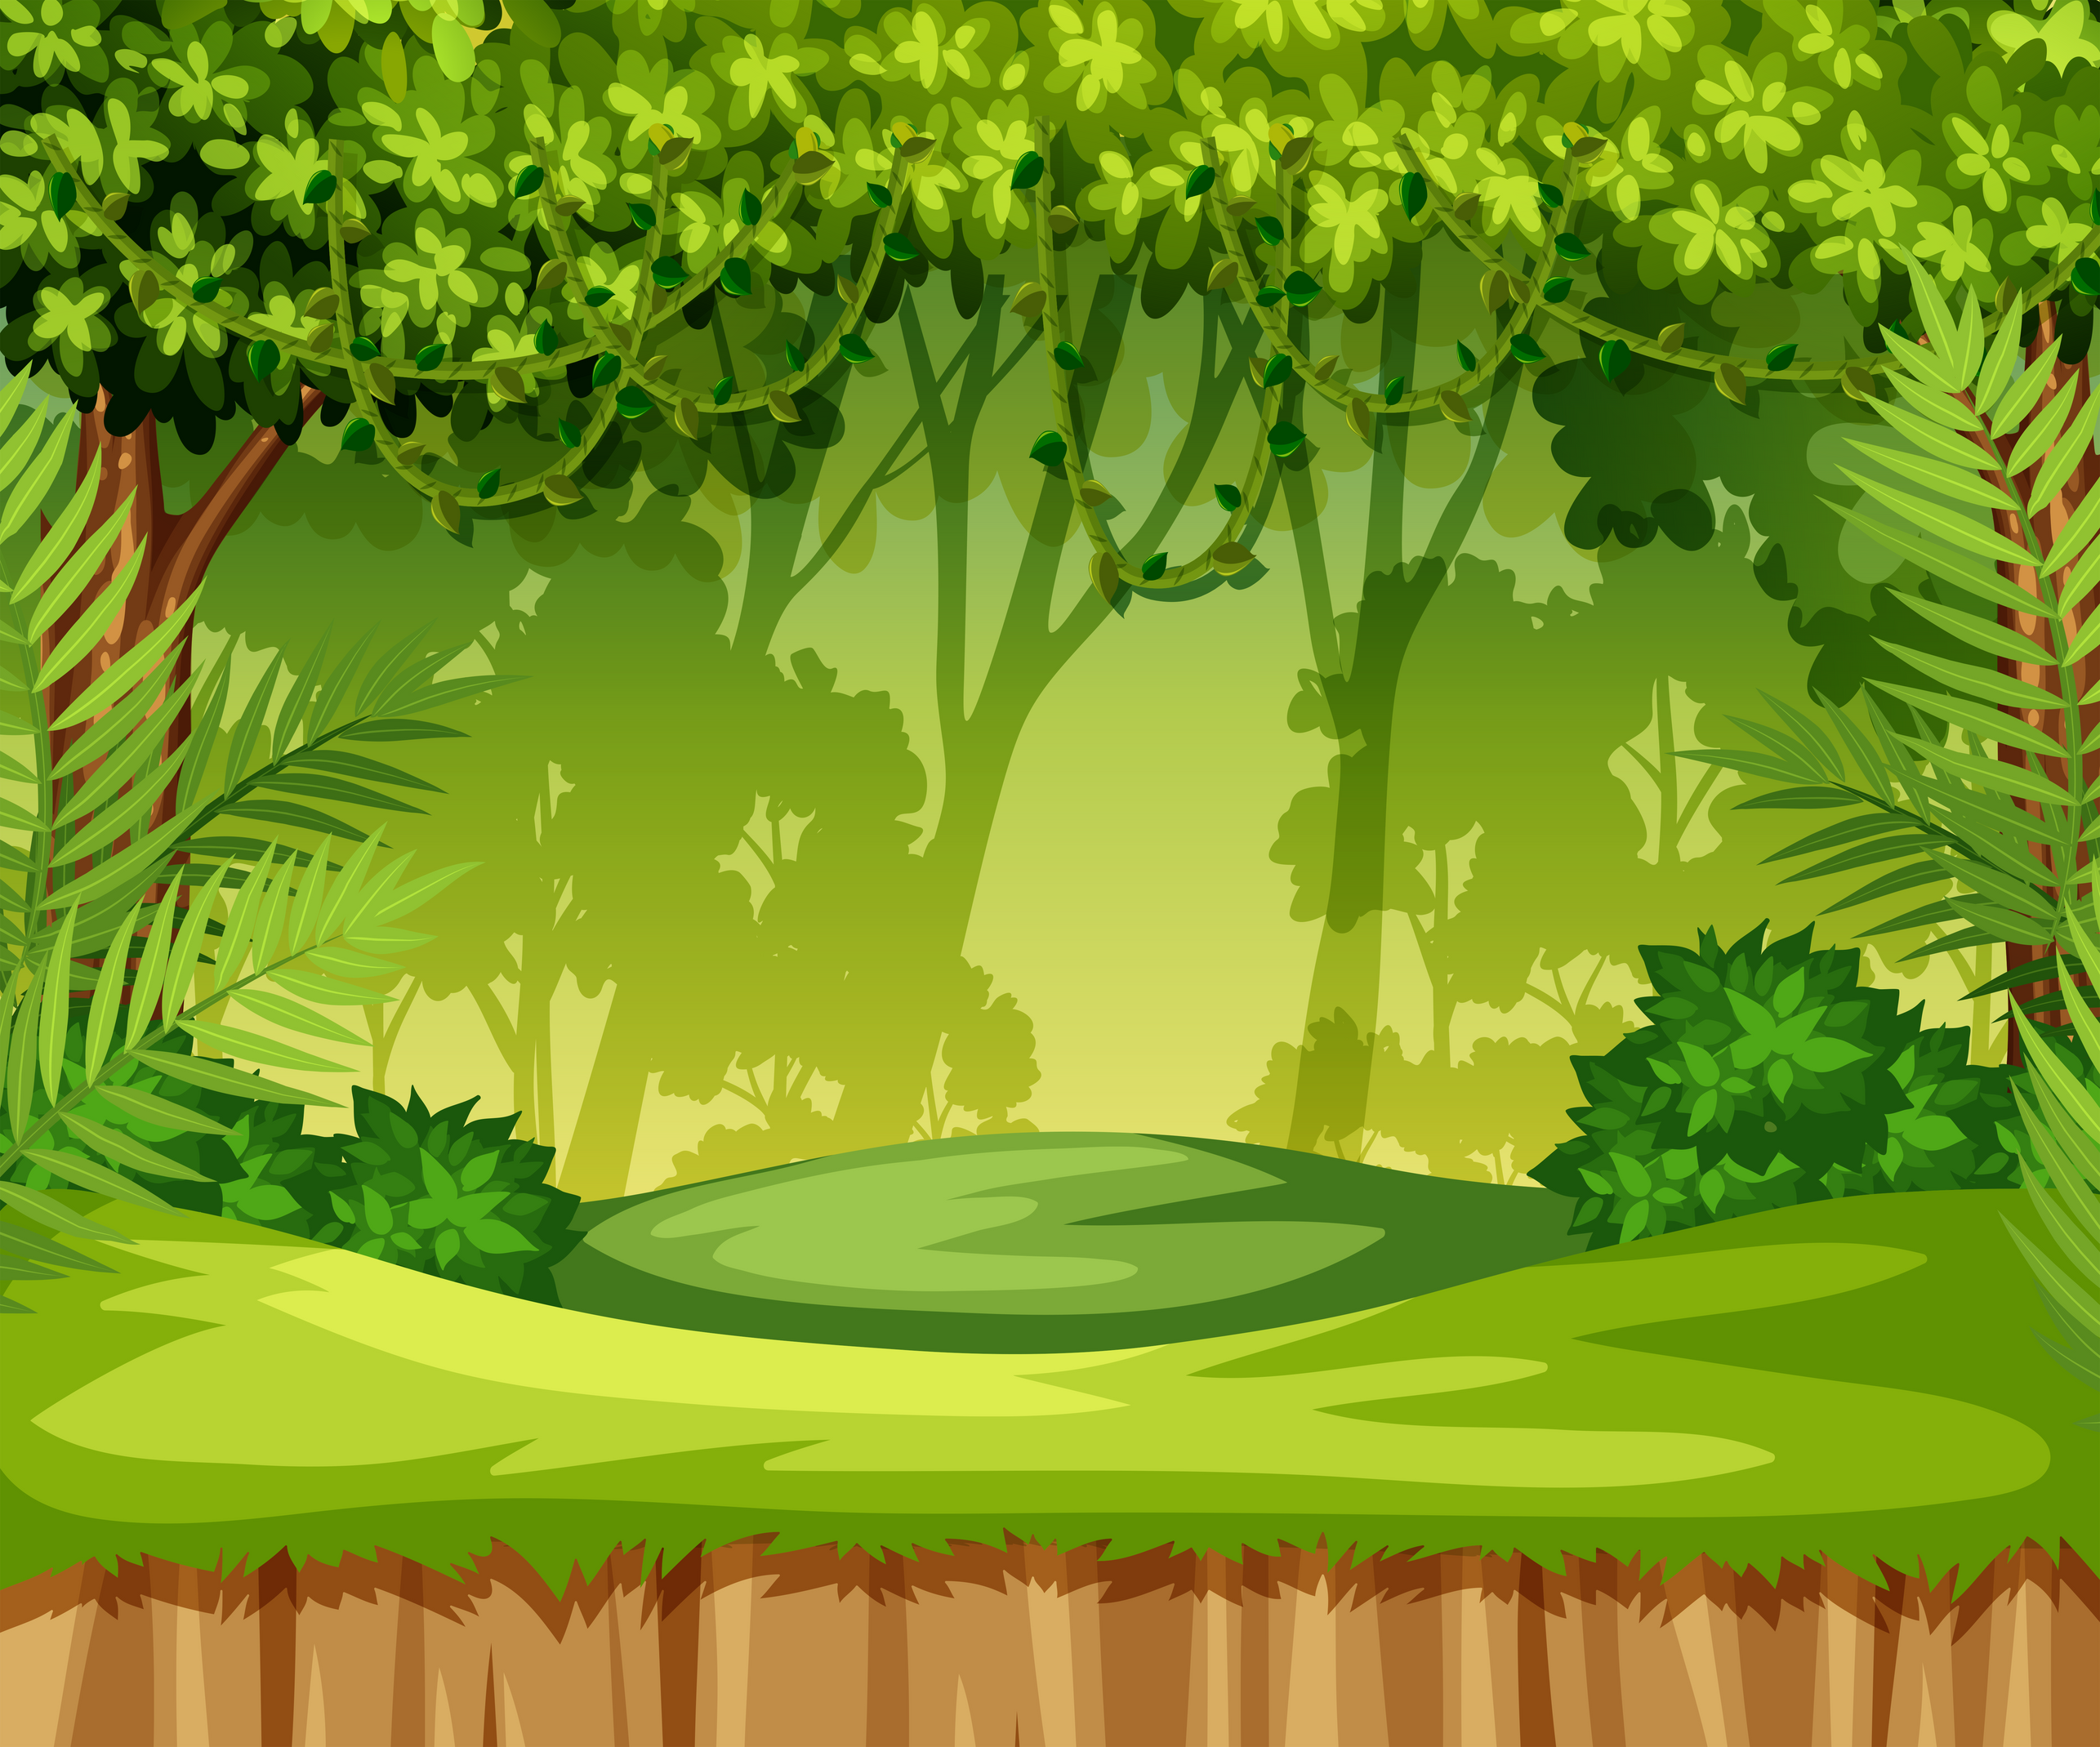 Green jungle landscape scene